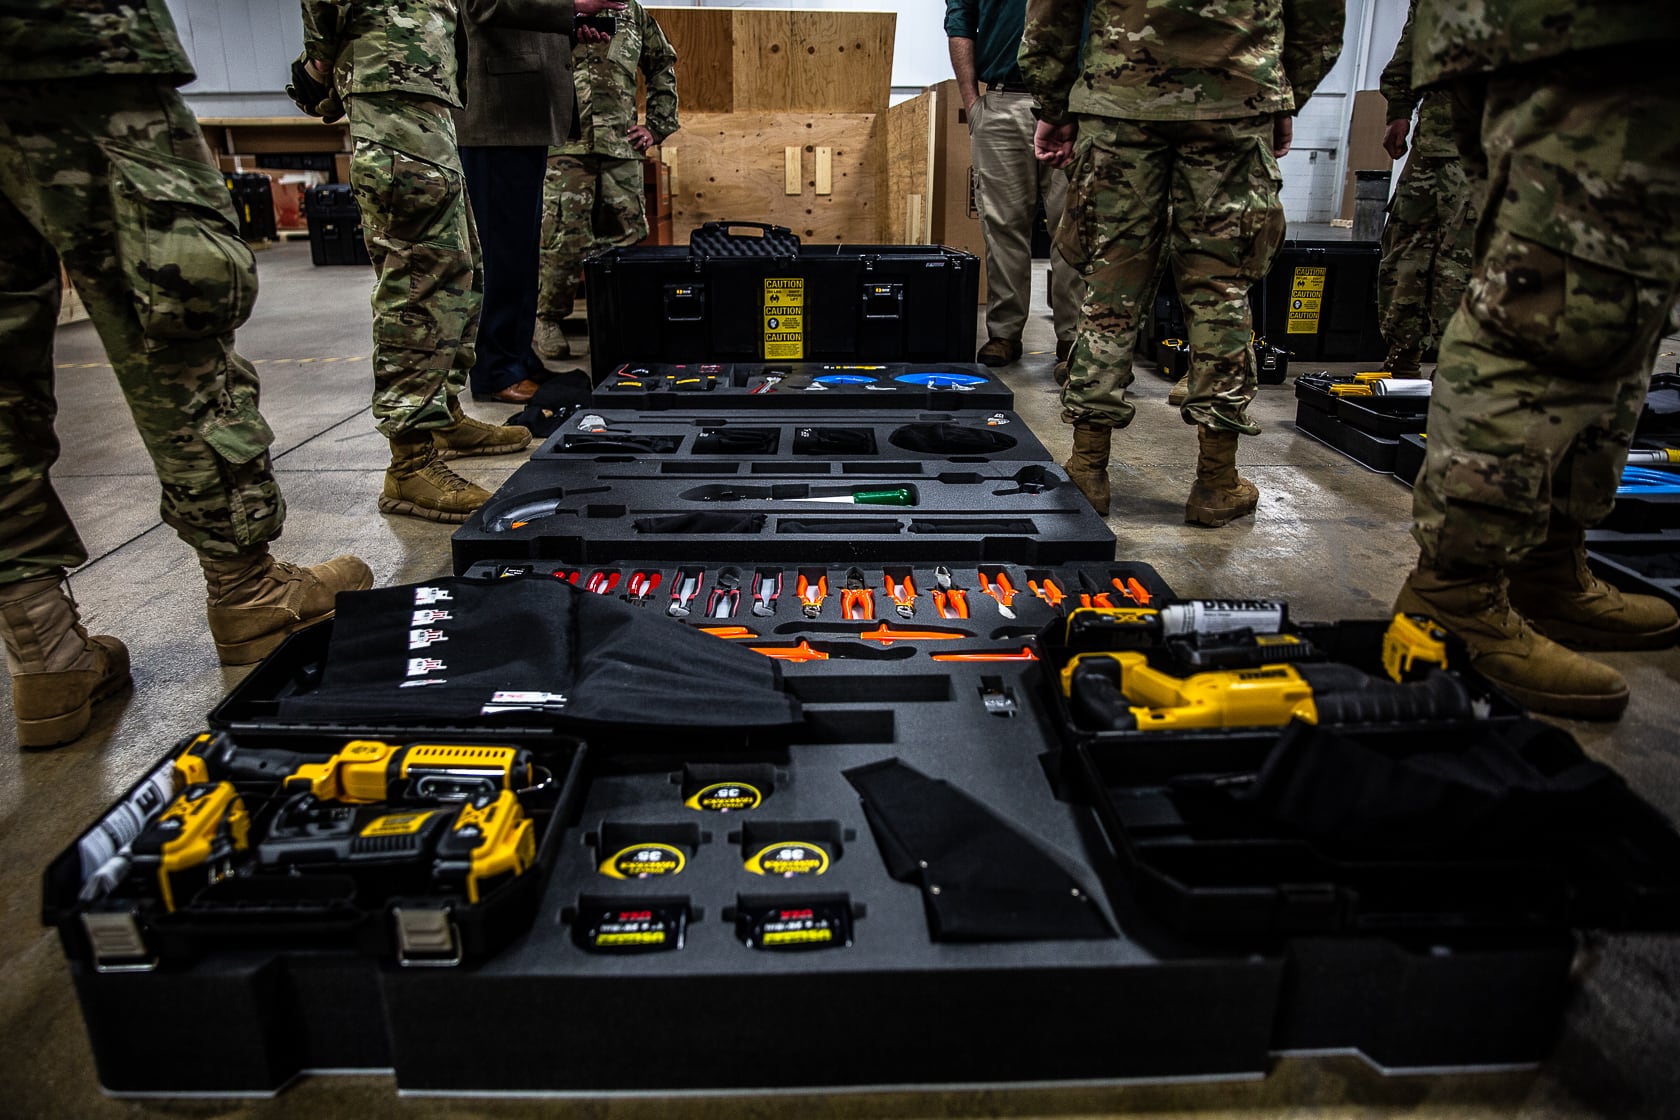 Military tool kits in black heavy duty totes